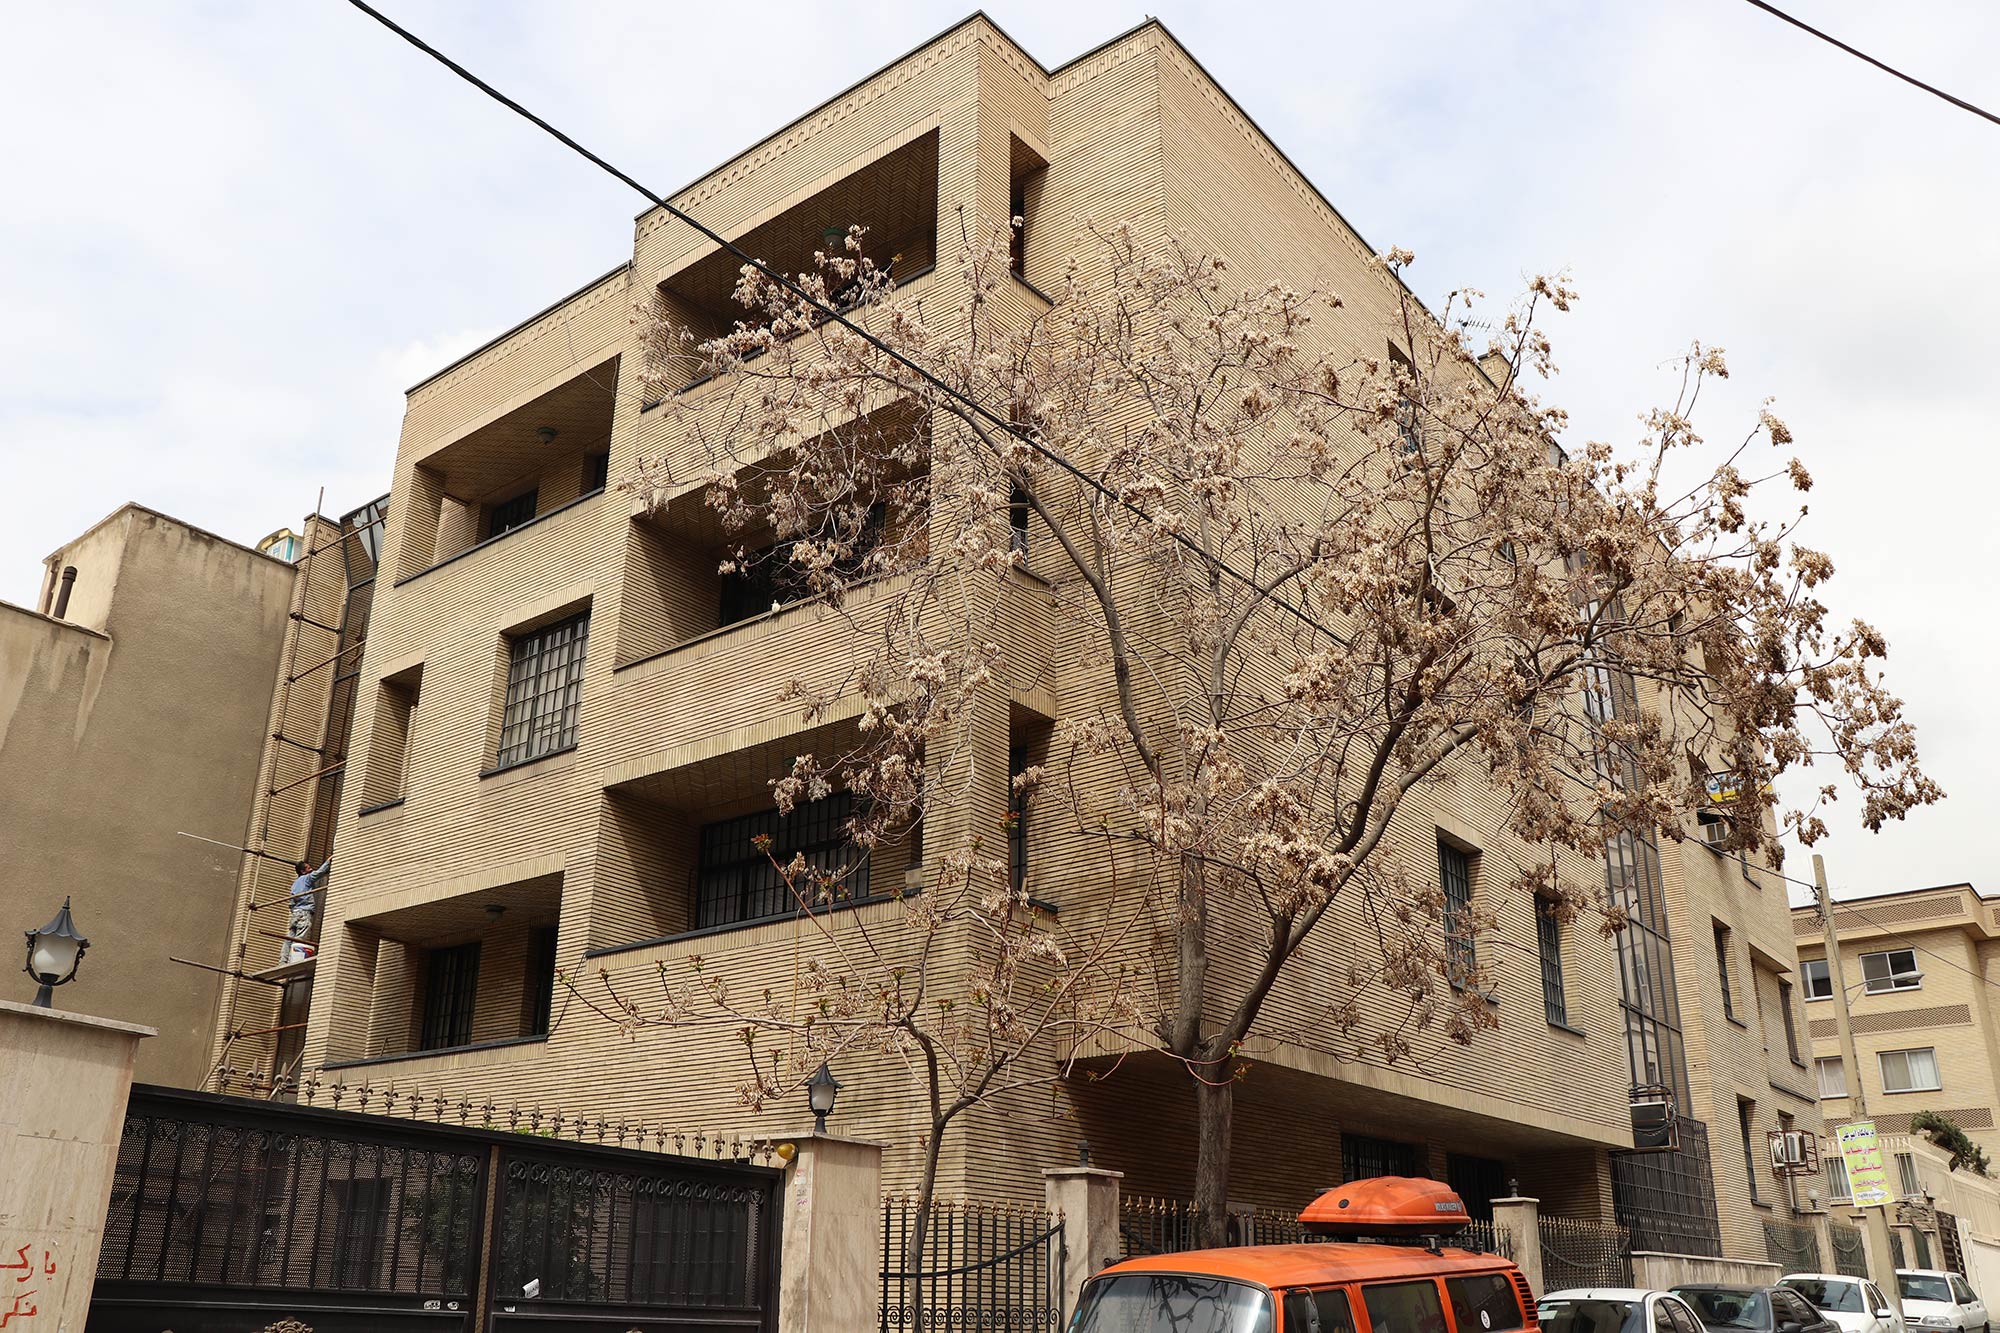 ساختمان پزشکان 99 تهران